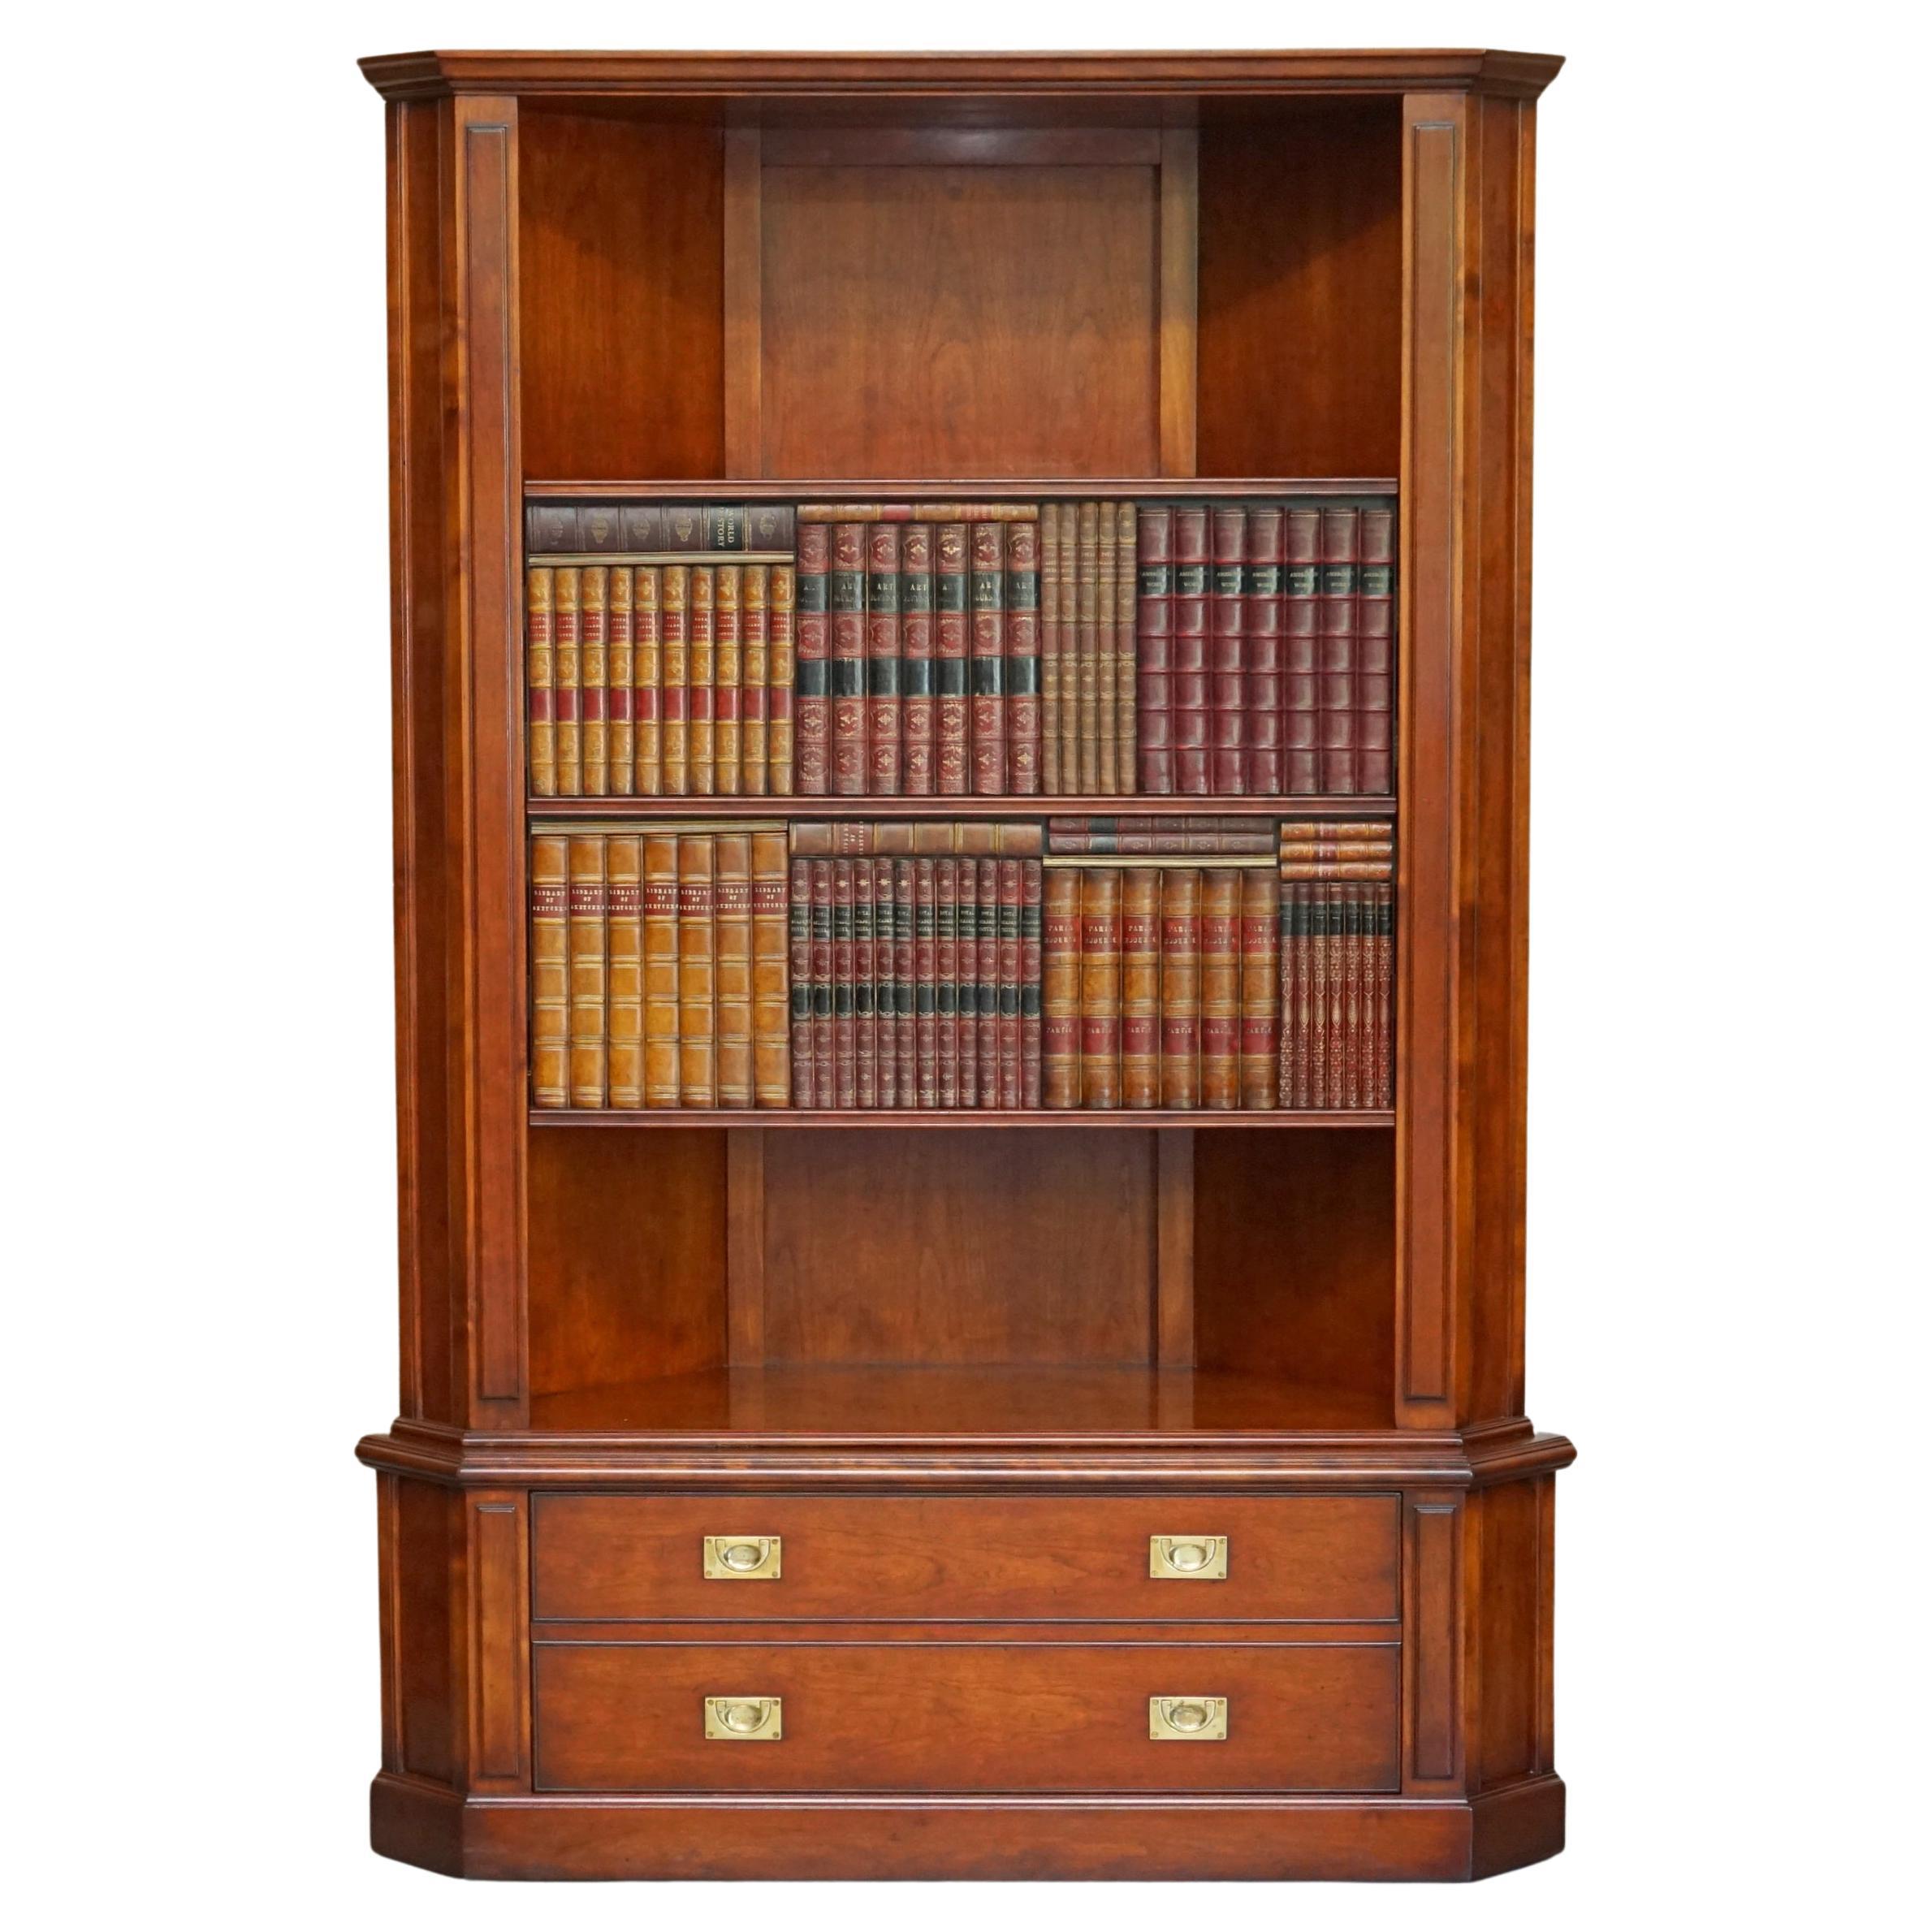 Harrods London Kennedy bibliothèque en bois de feuillus très rare meuble TV media cabinet de faux livres